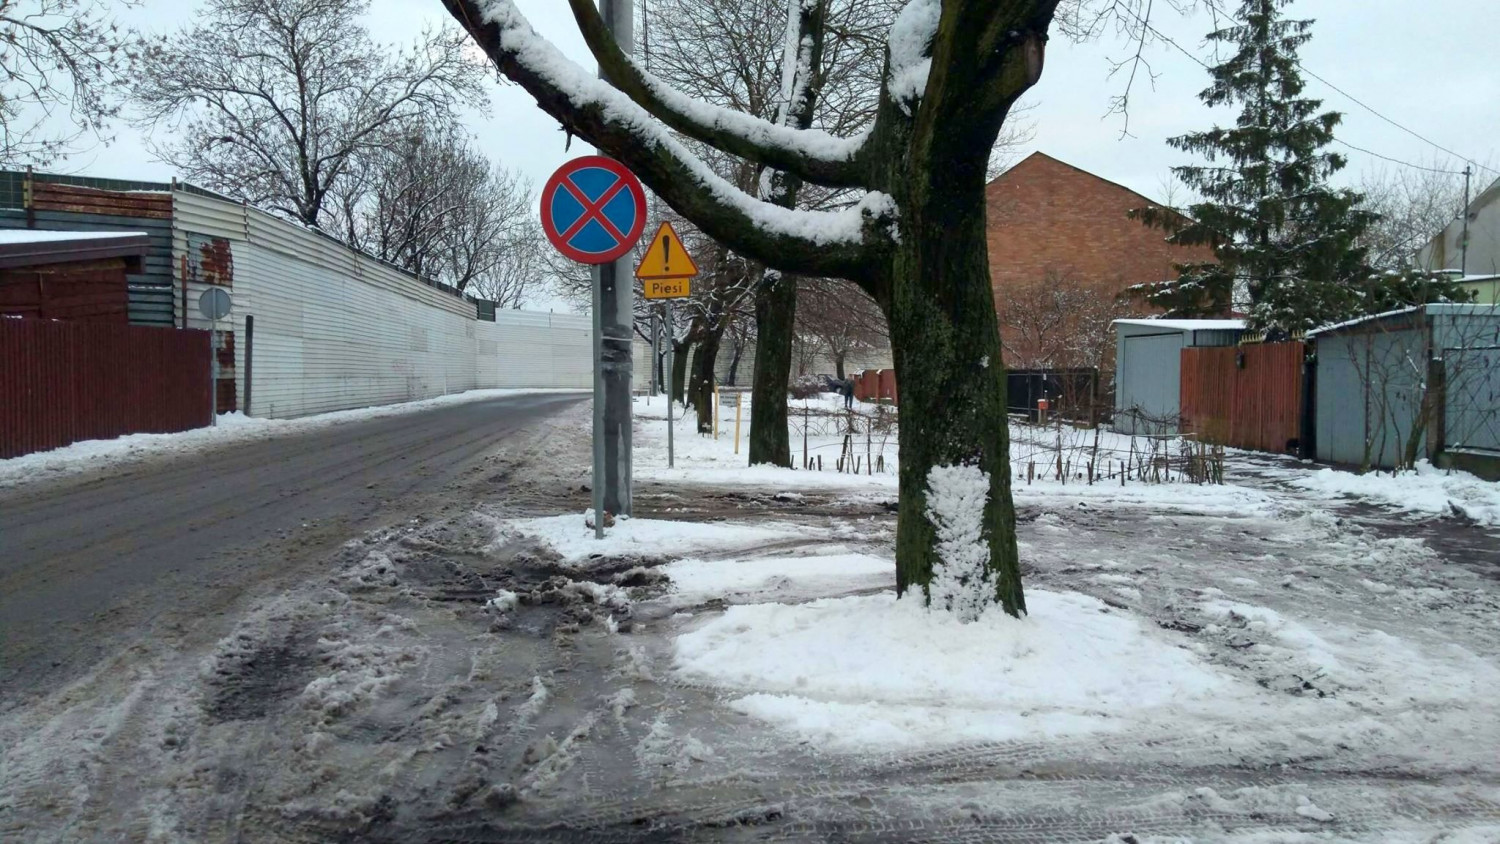 Na Dojazdowej nie ma chodnika. Kierowcy muszą tu szczególnie uważać na pieszych. Fot. DDWloclawek.pl